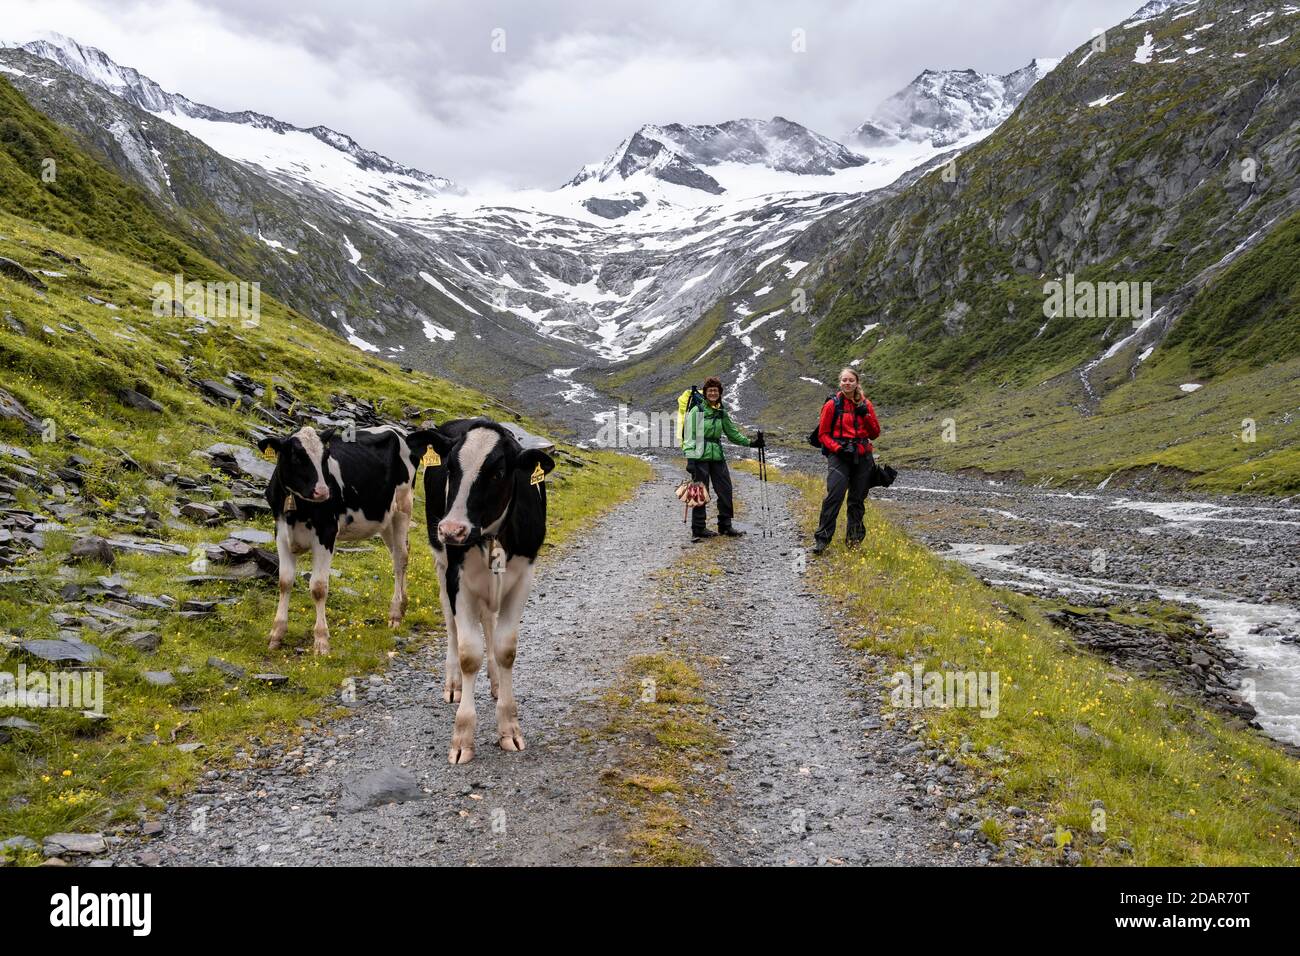 Kuehe und Wanderer auf Wanderweg vor Gletscher, Schlegeiskees, Schnee bedeckte Berggipfel, Hoher Weiszint, Berliner Hoehenweg, Zillertal, Tirol Stock Photo